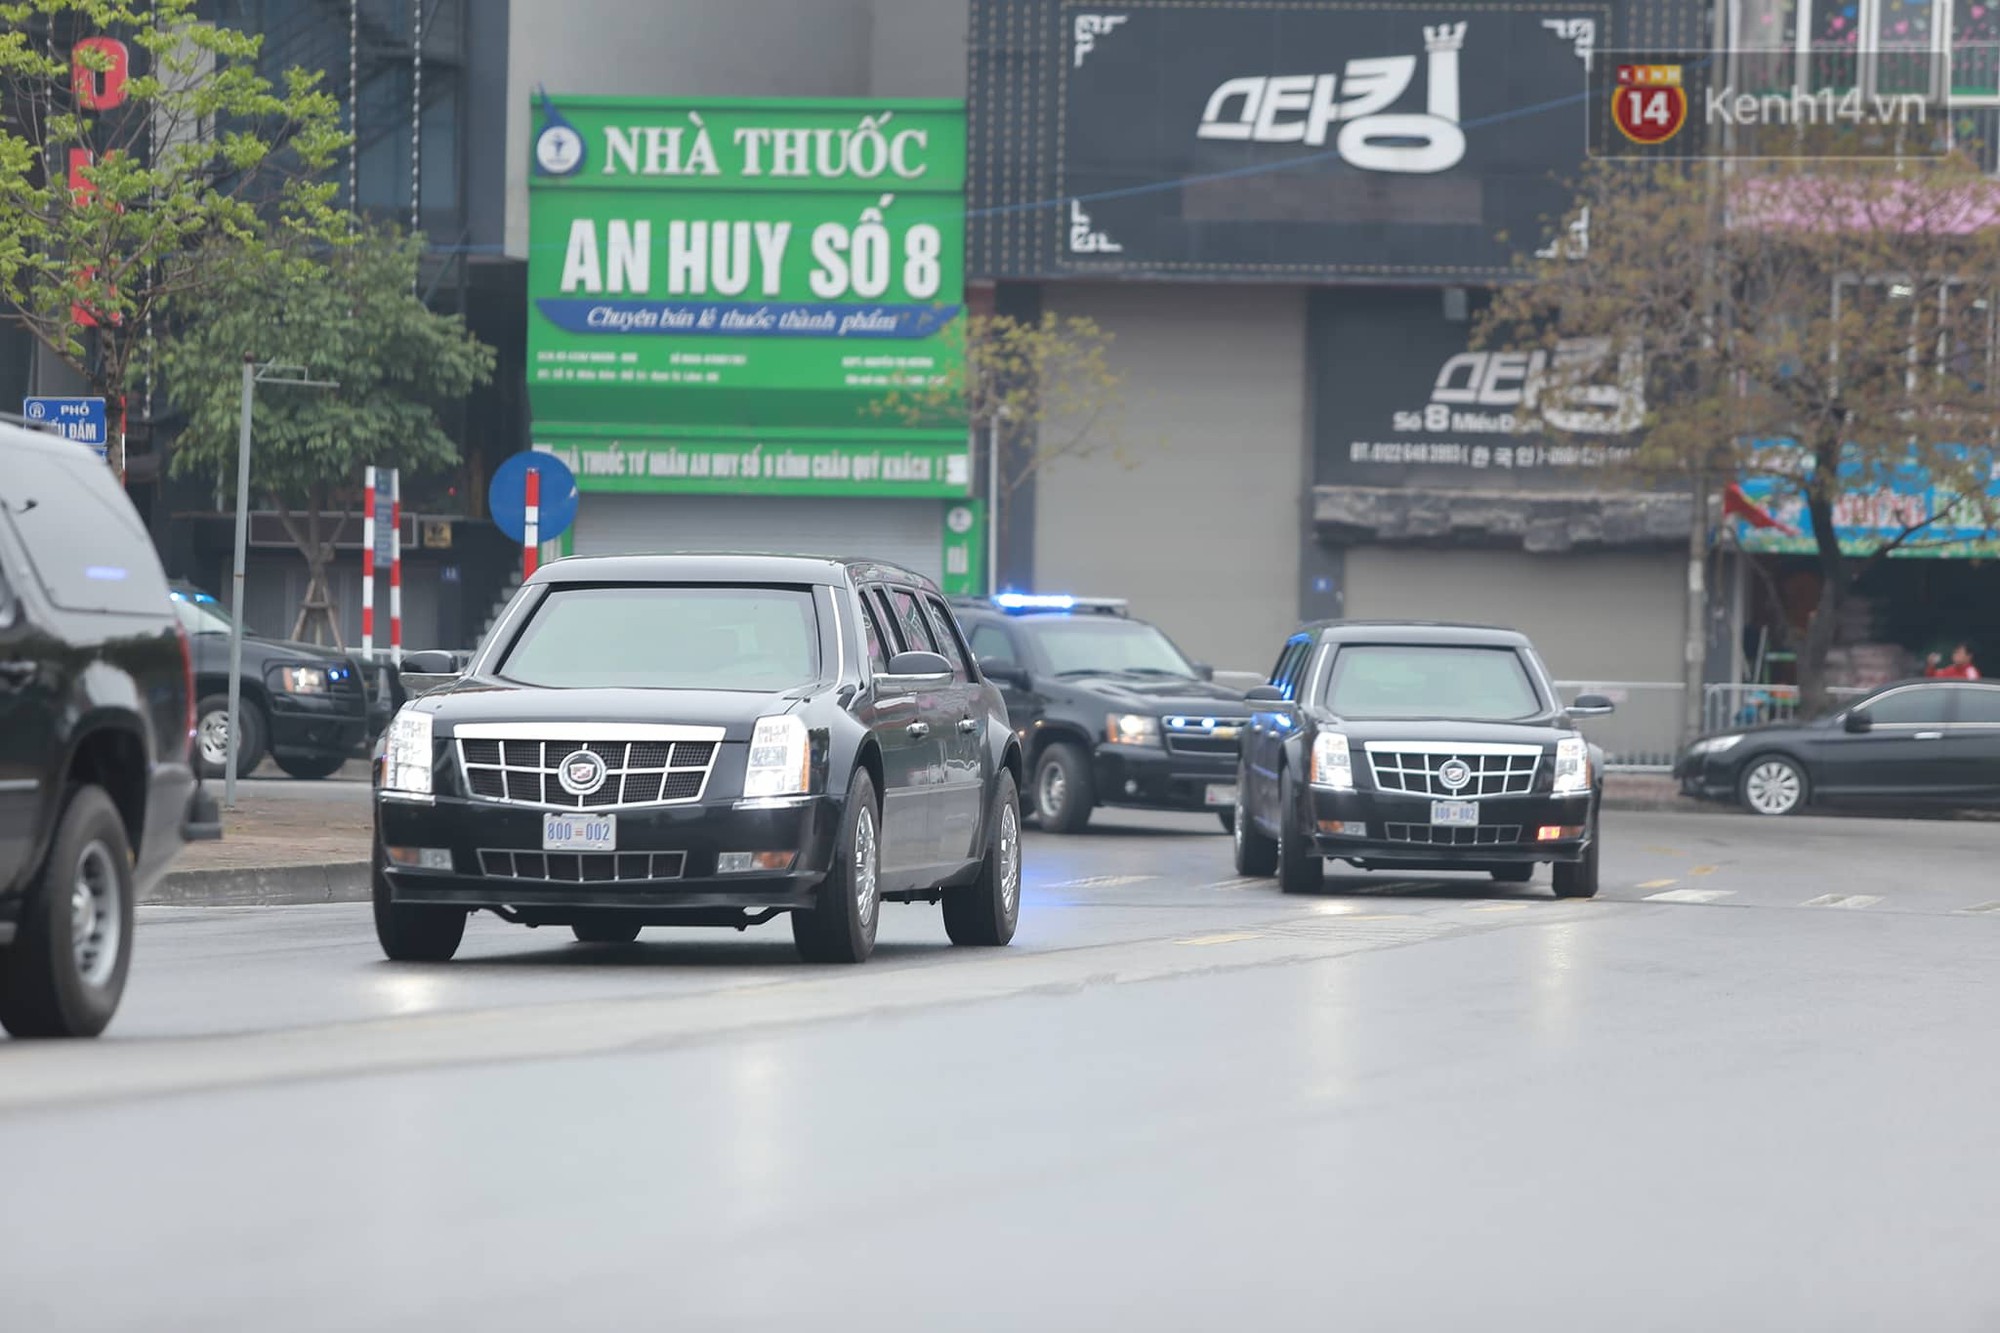 Cận cảnh siêu xe Quái thú của Tổng thống Trump và đoàn xe hộ tống trên đường phố Hà Nội - Ảnh 1.